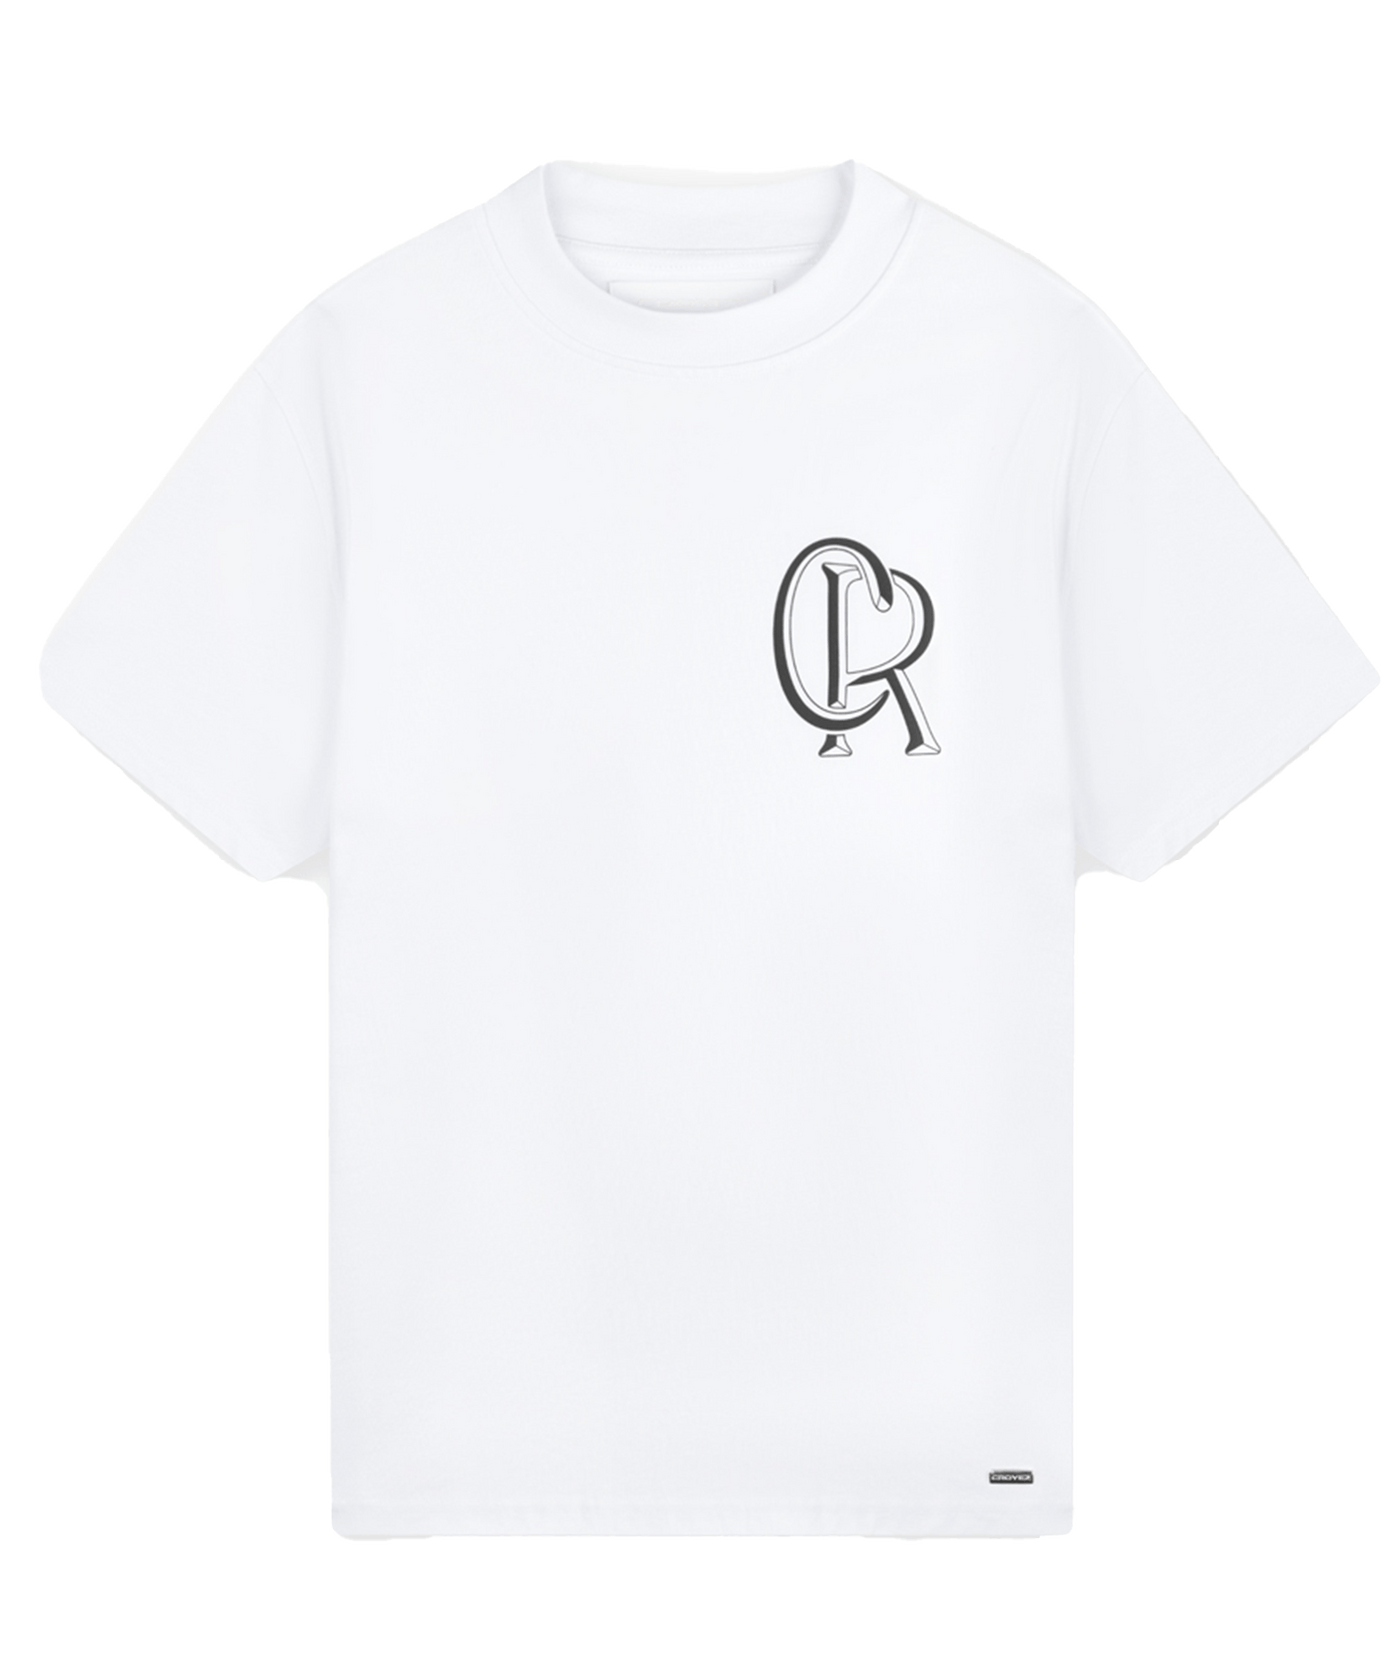 CROYEZ - Initial - T-shirt - White